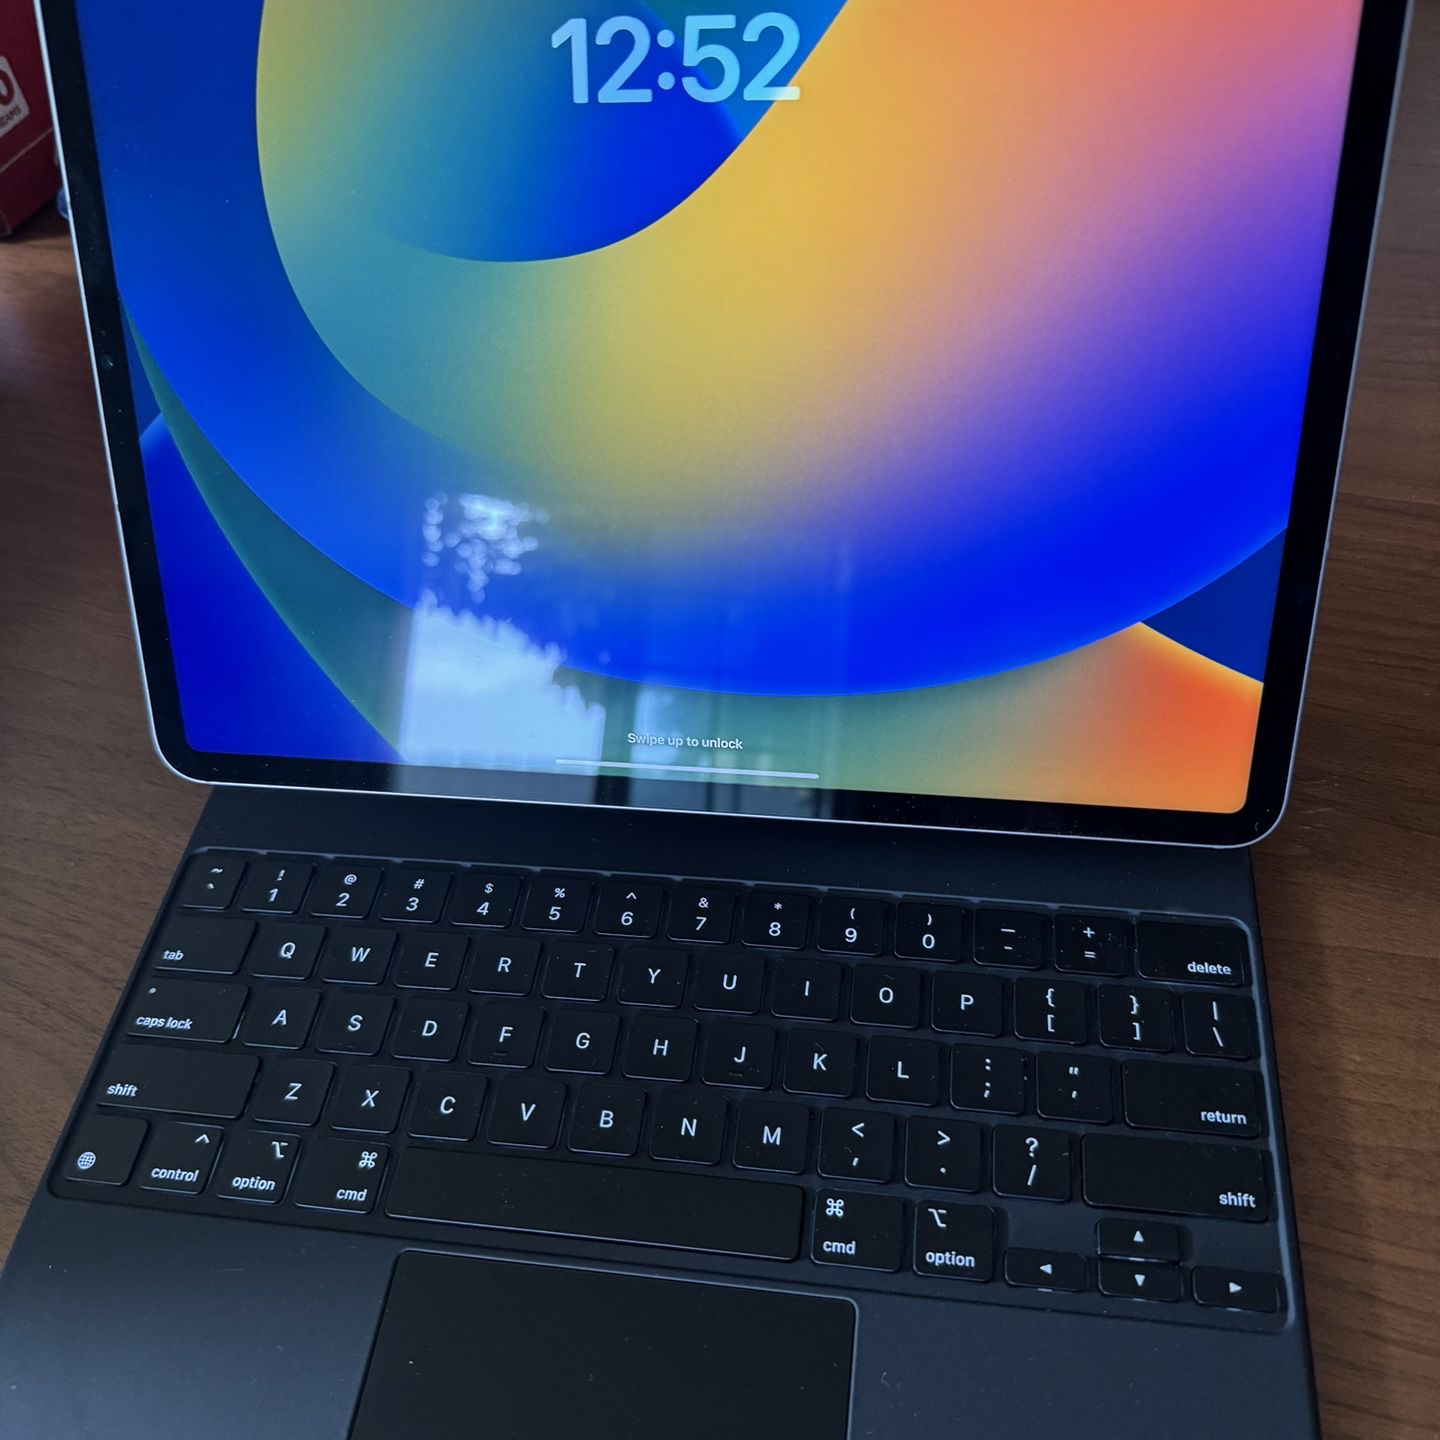 Apple iPad, Keyboard, And Pencil 